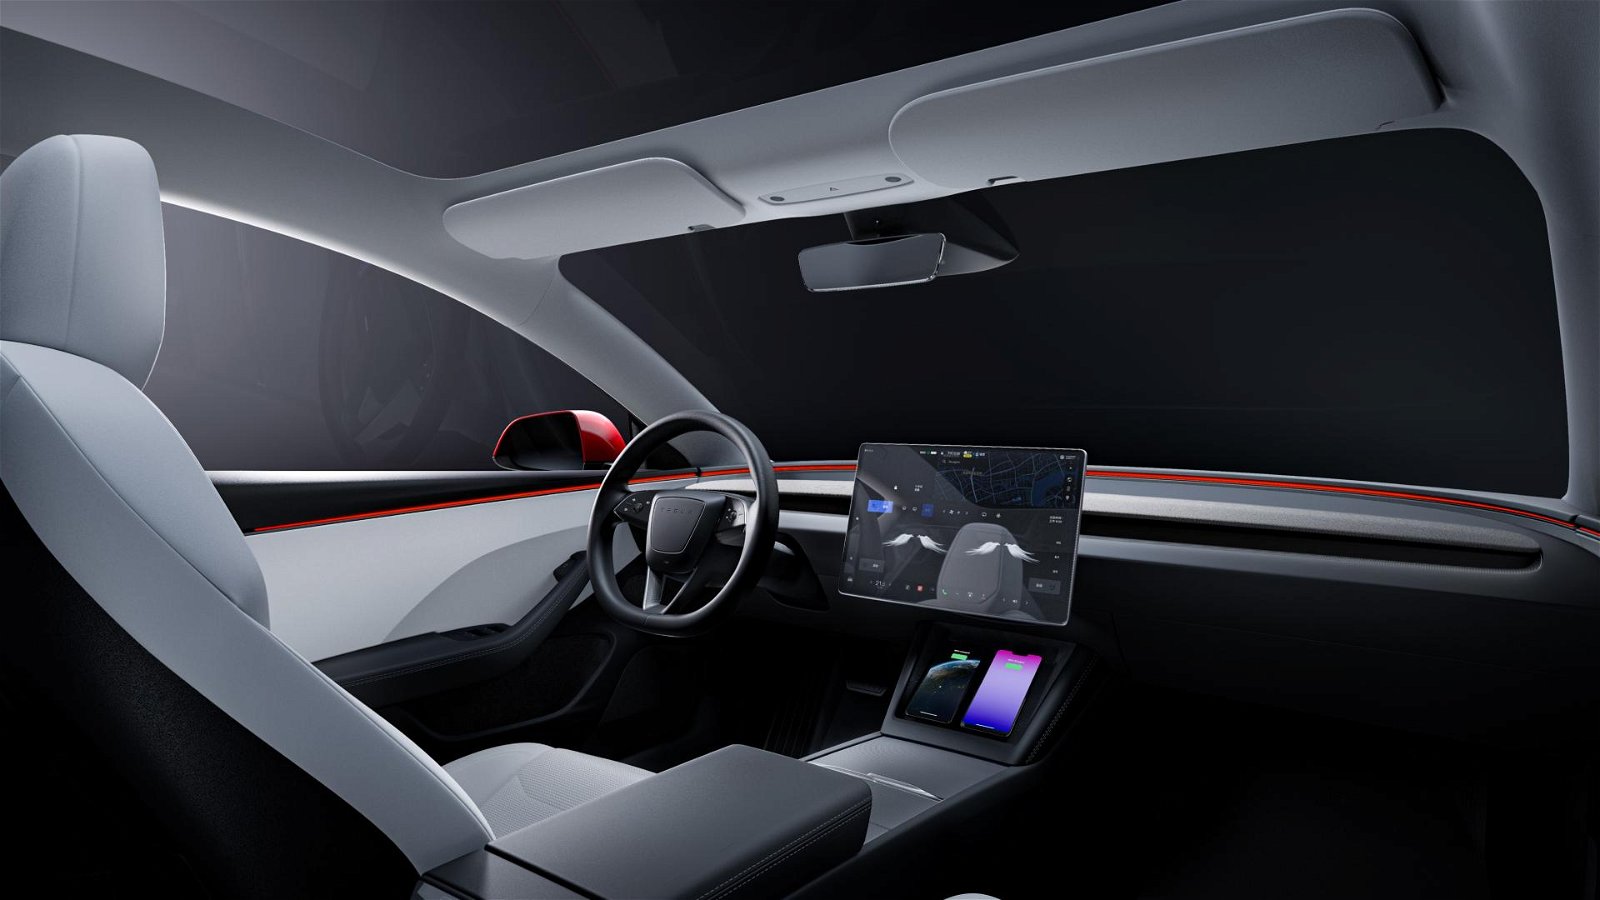 Project Highland“: Tesla plant große Überarbeitung des Tesla Model